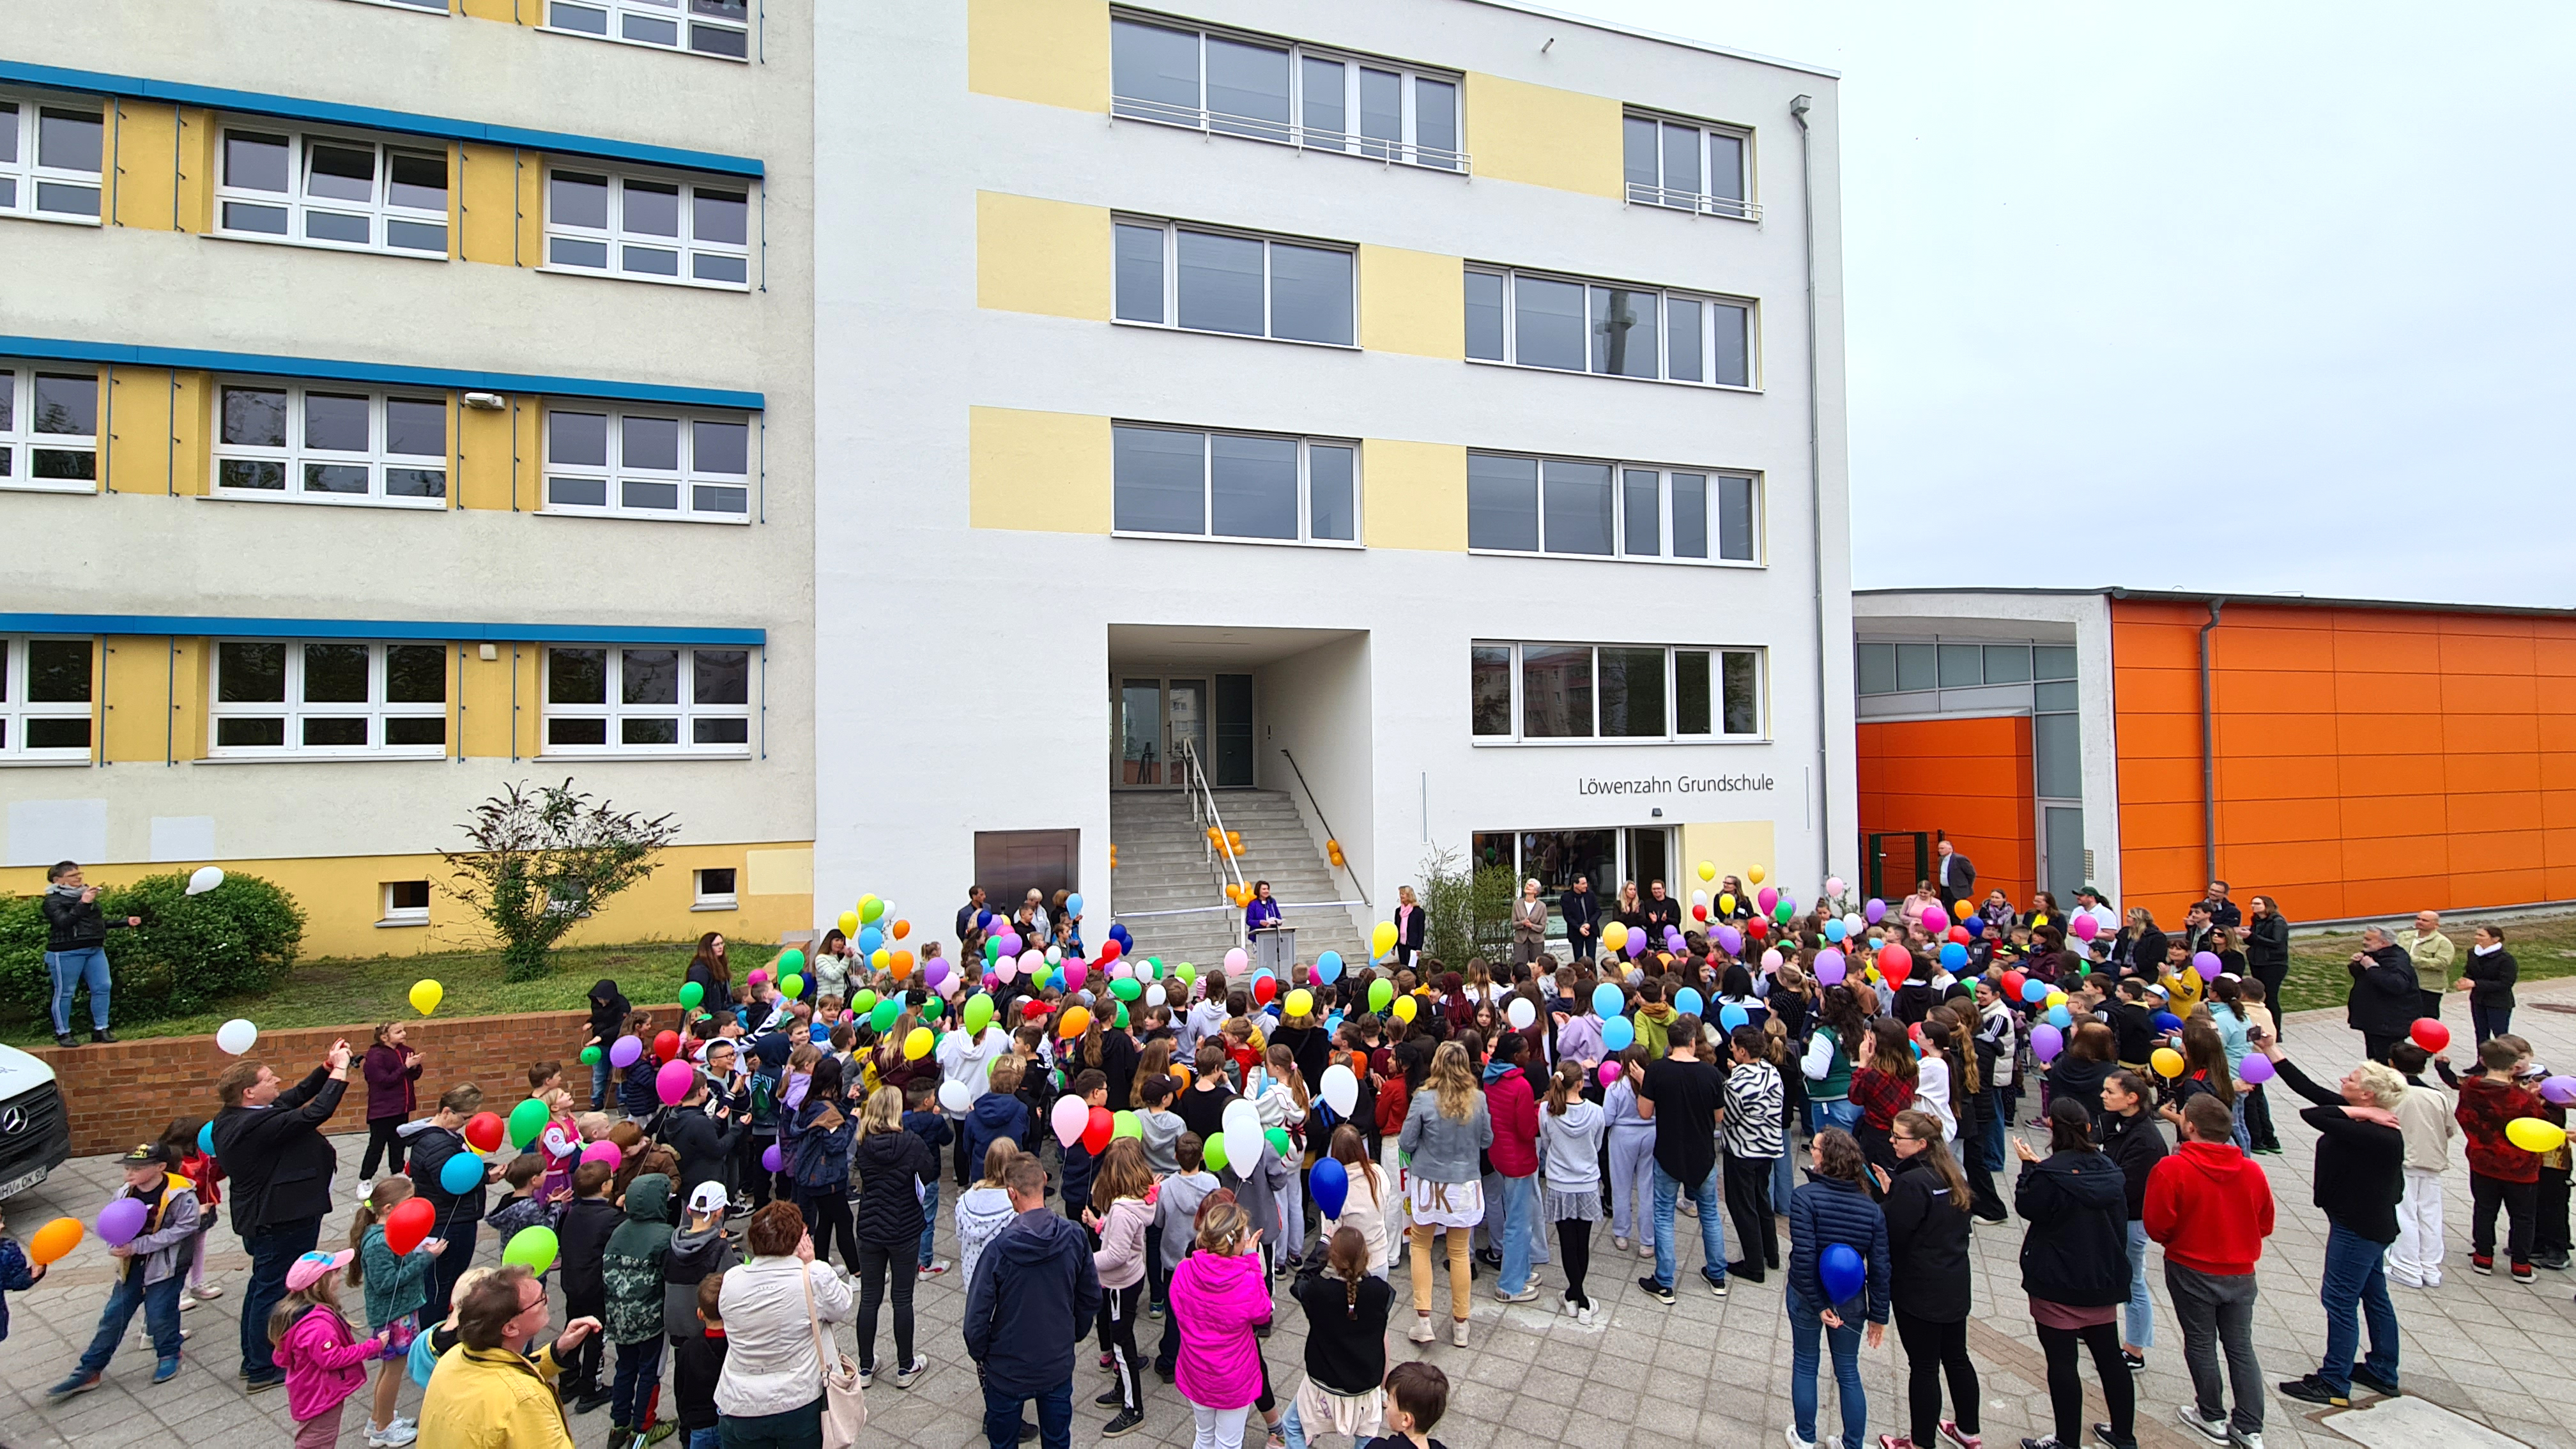 Darstellung zur Eröffnung des Erweiterungsbaus der Löwenzahn Grundschule in Velten mit Blick auf die Schule